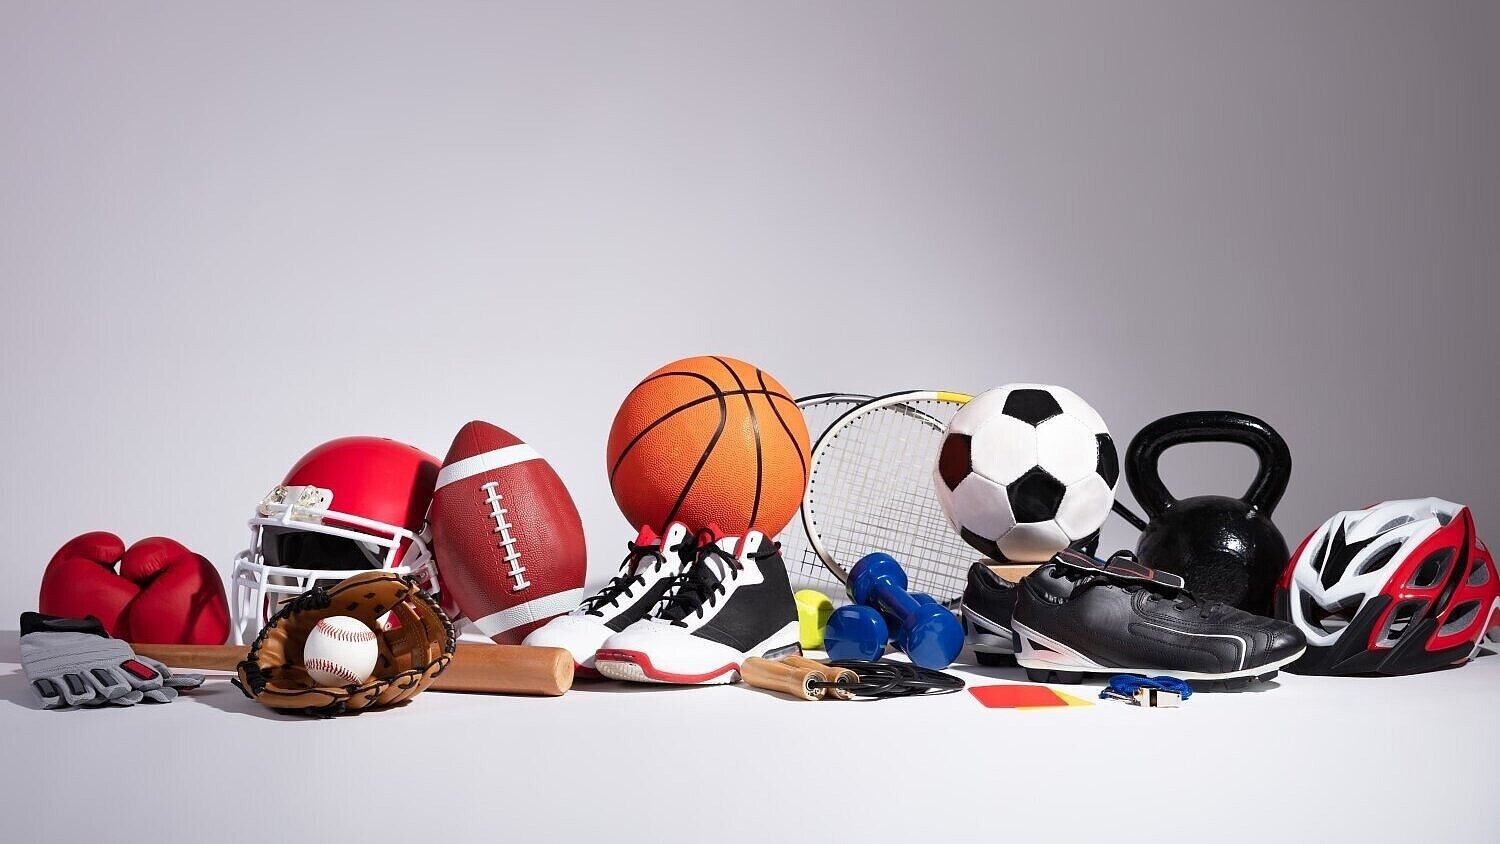 Diverses Sportequipment vor grauem Hintergrund